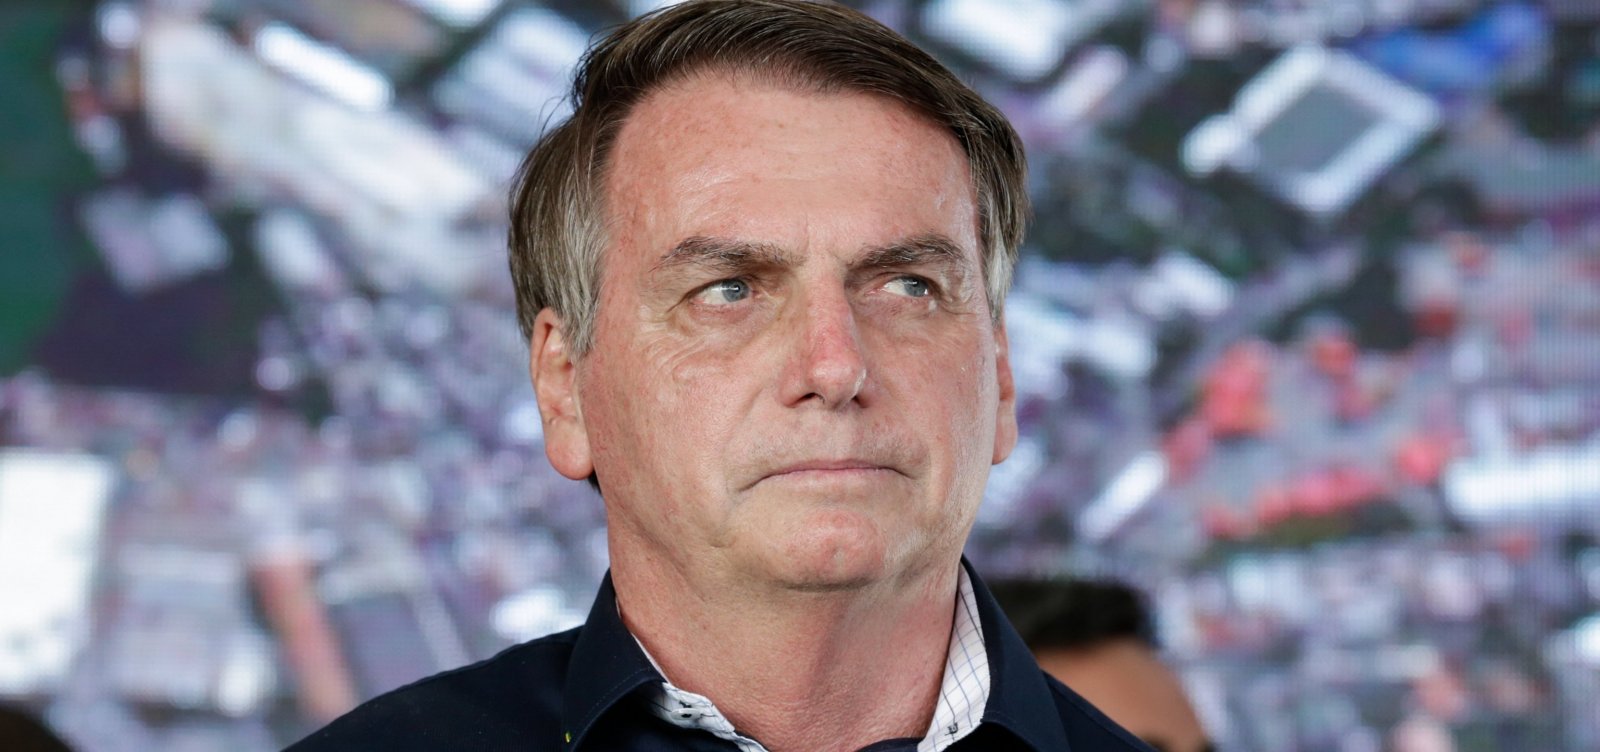 Bolsonaro insulta repórter e insinua que ela queria 'dar o furo a qualquer preço'